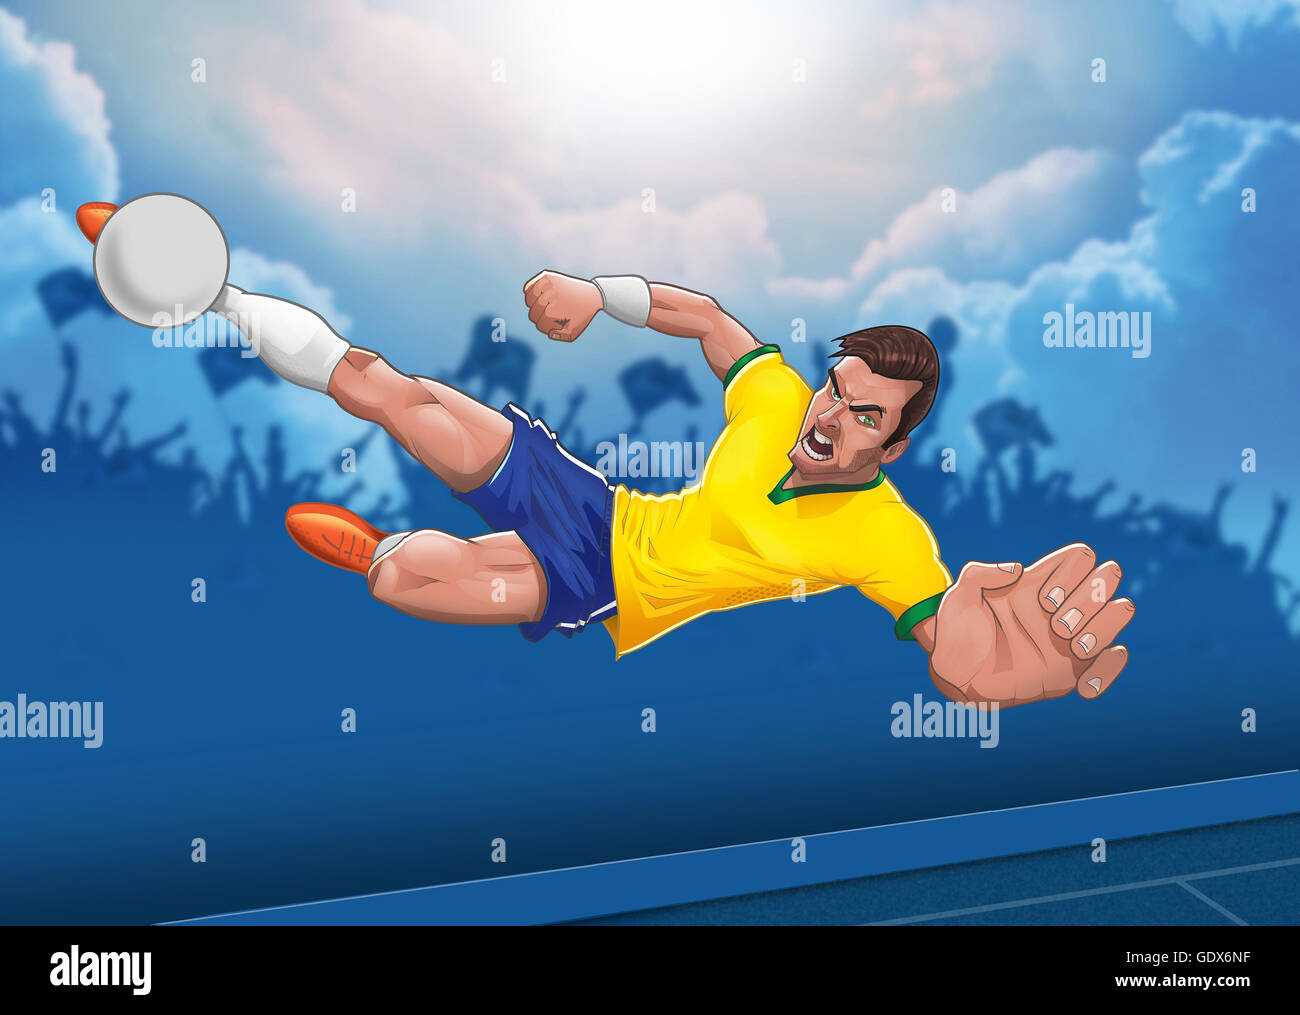 Ermittelten Fußballspieler führt Luft geboren horizontale Scheren Kick gegen den blauen bewölkten Himmel Hintergrund illustration Stockfoto